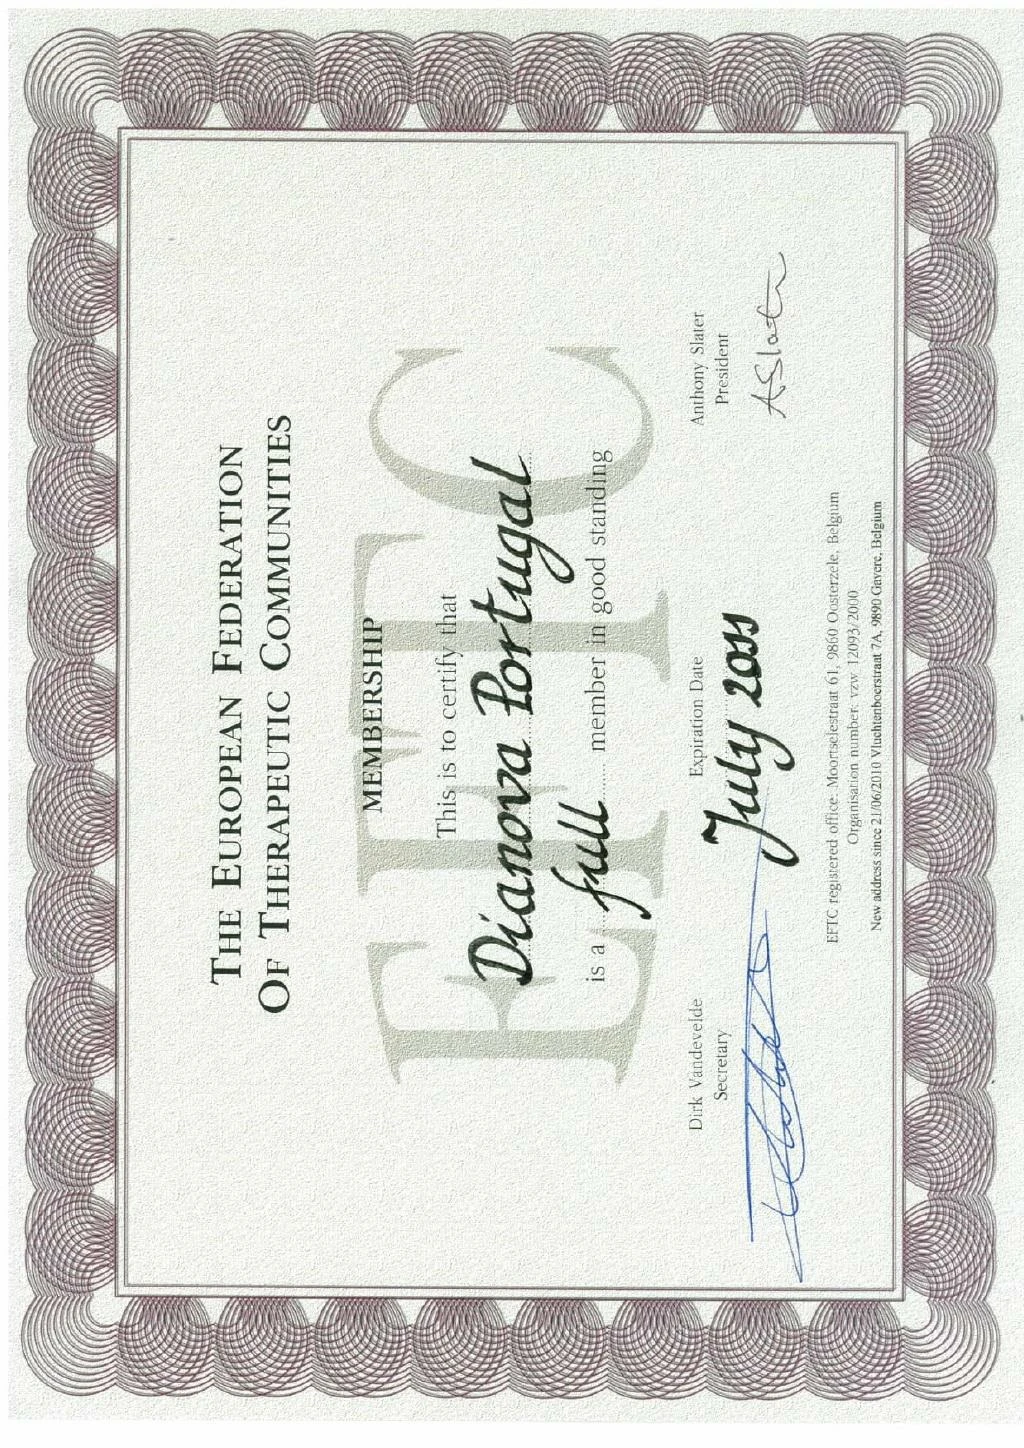 eftc full membership certificate 2010 dianova